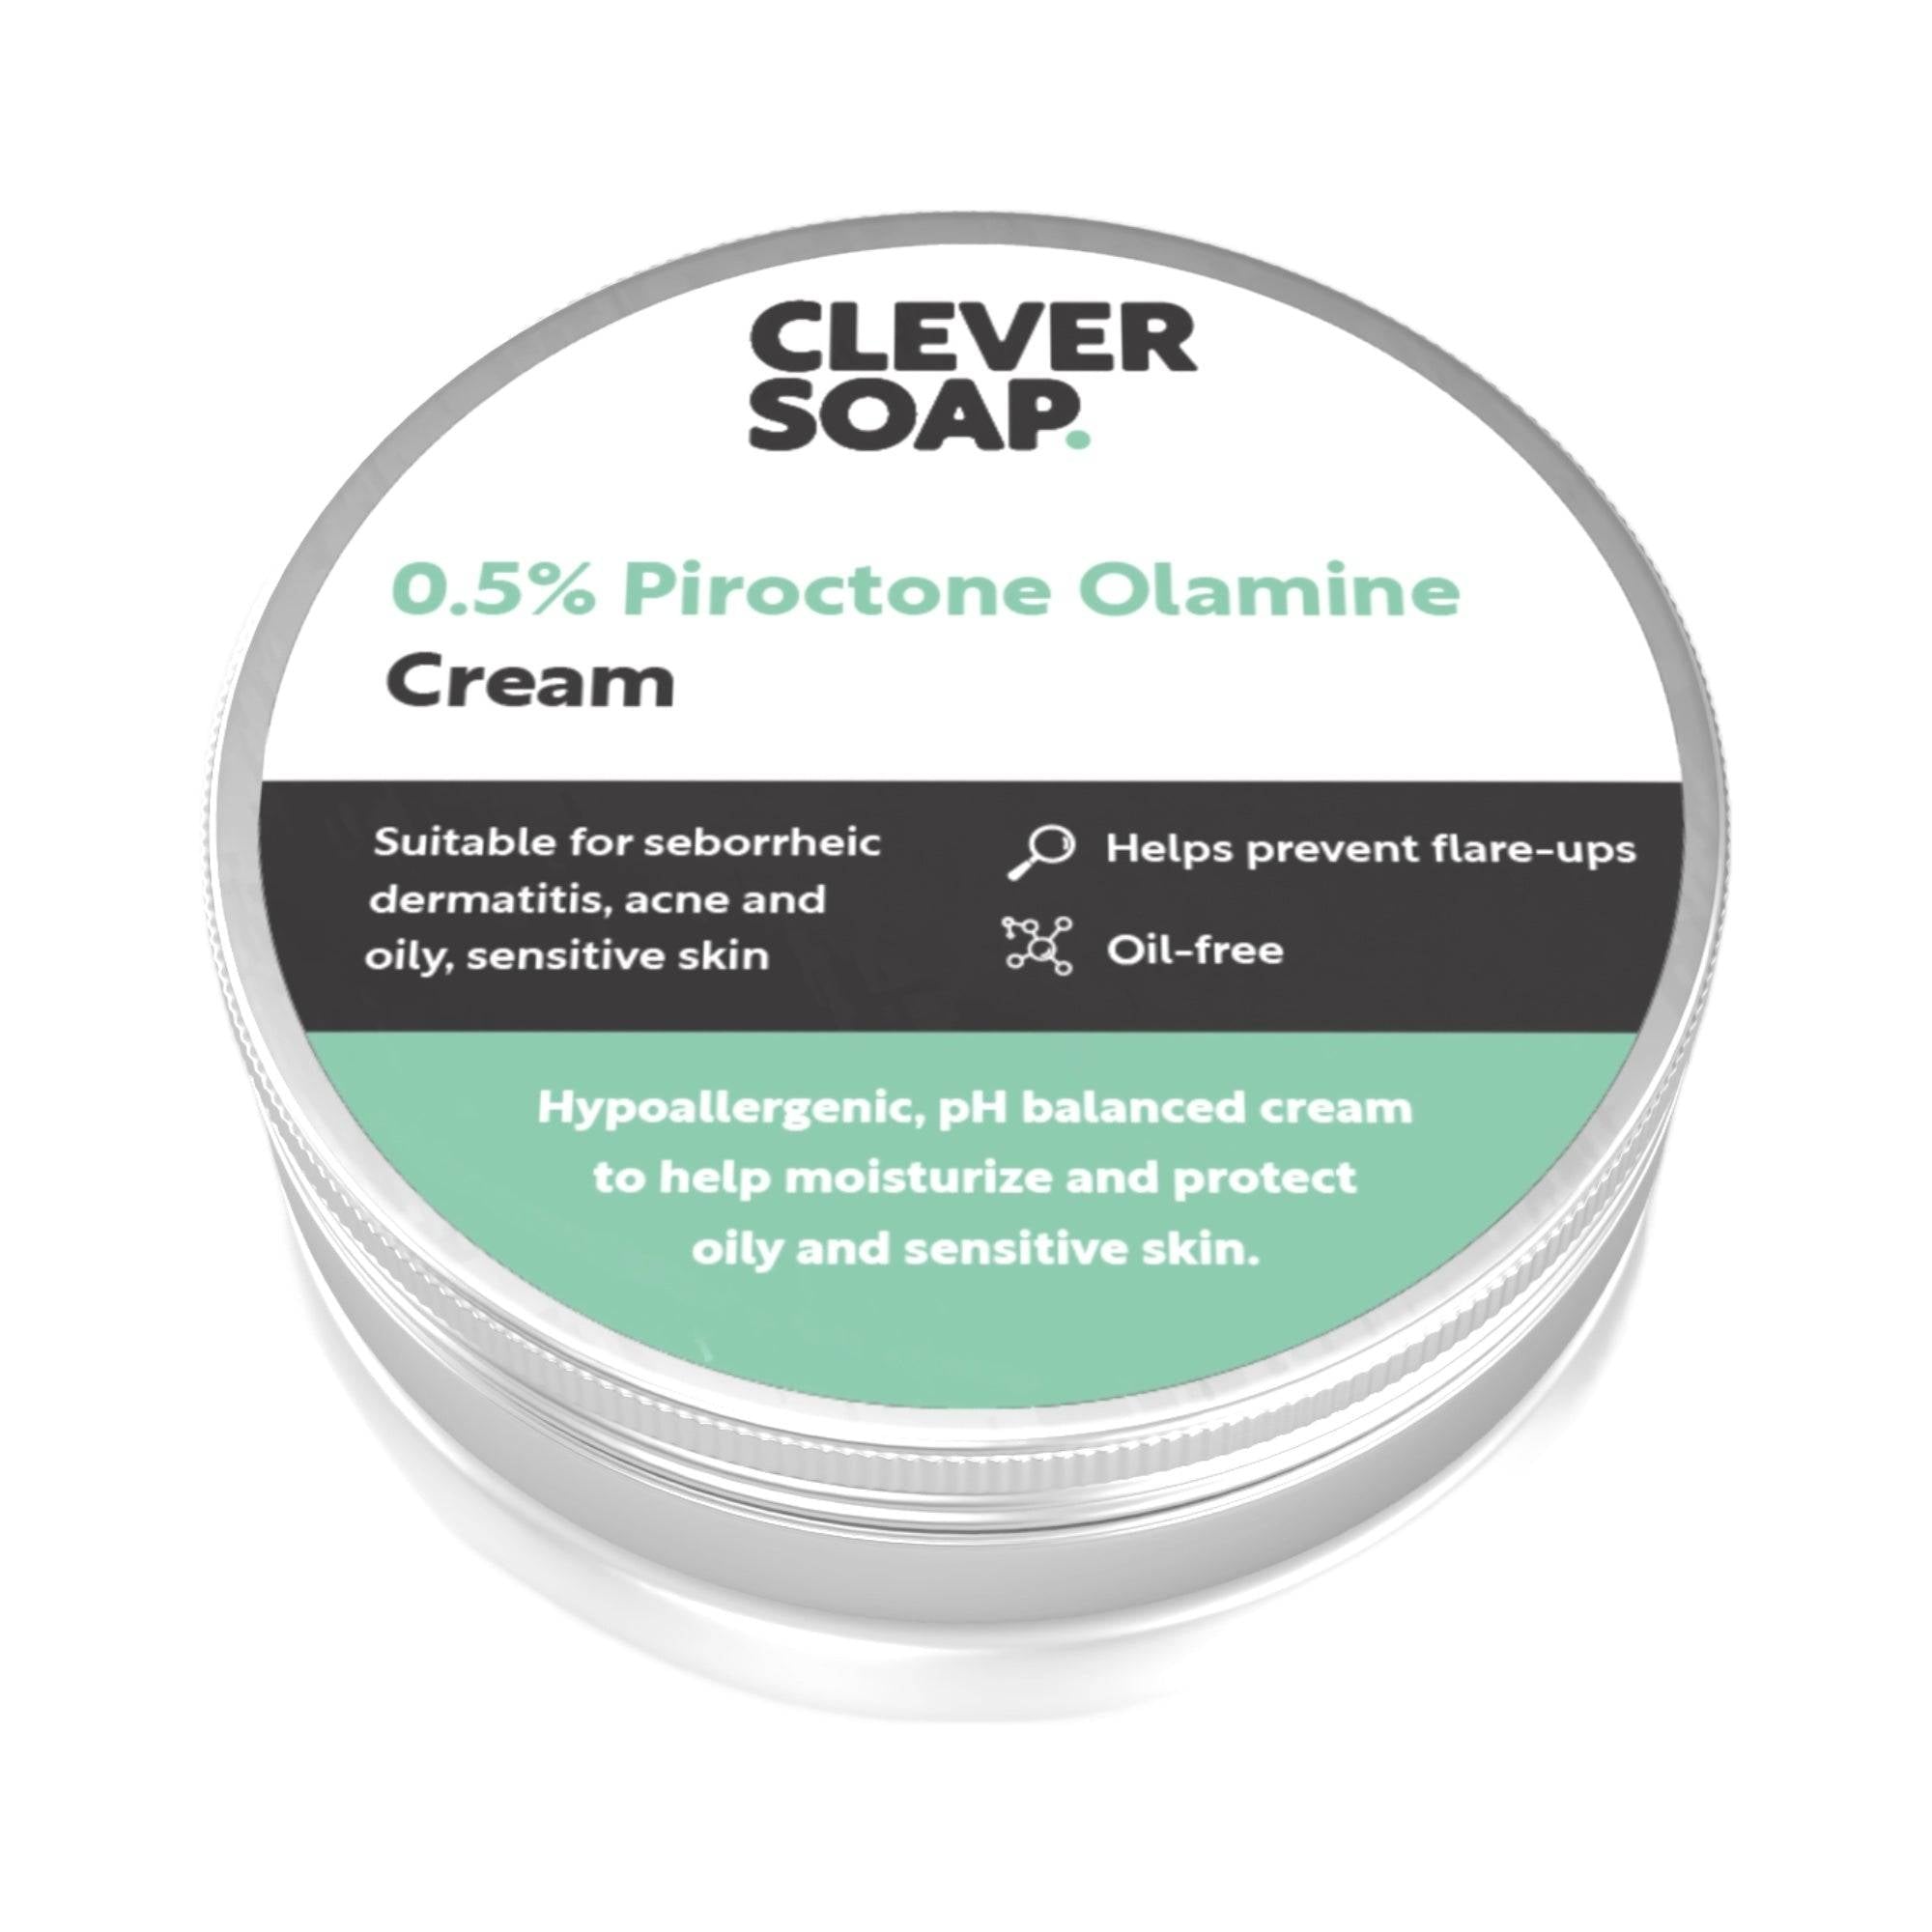 Piroctone Olamine Cream Main